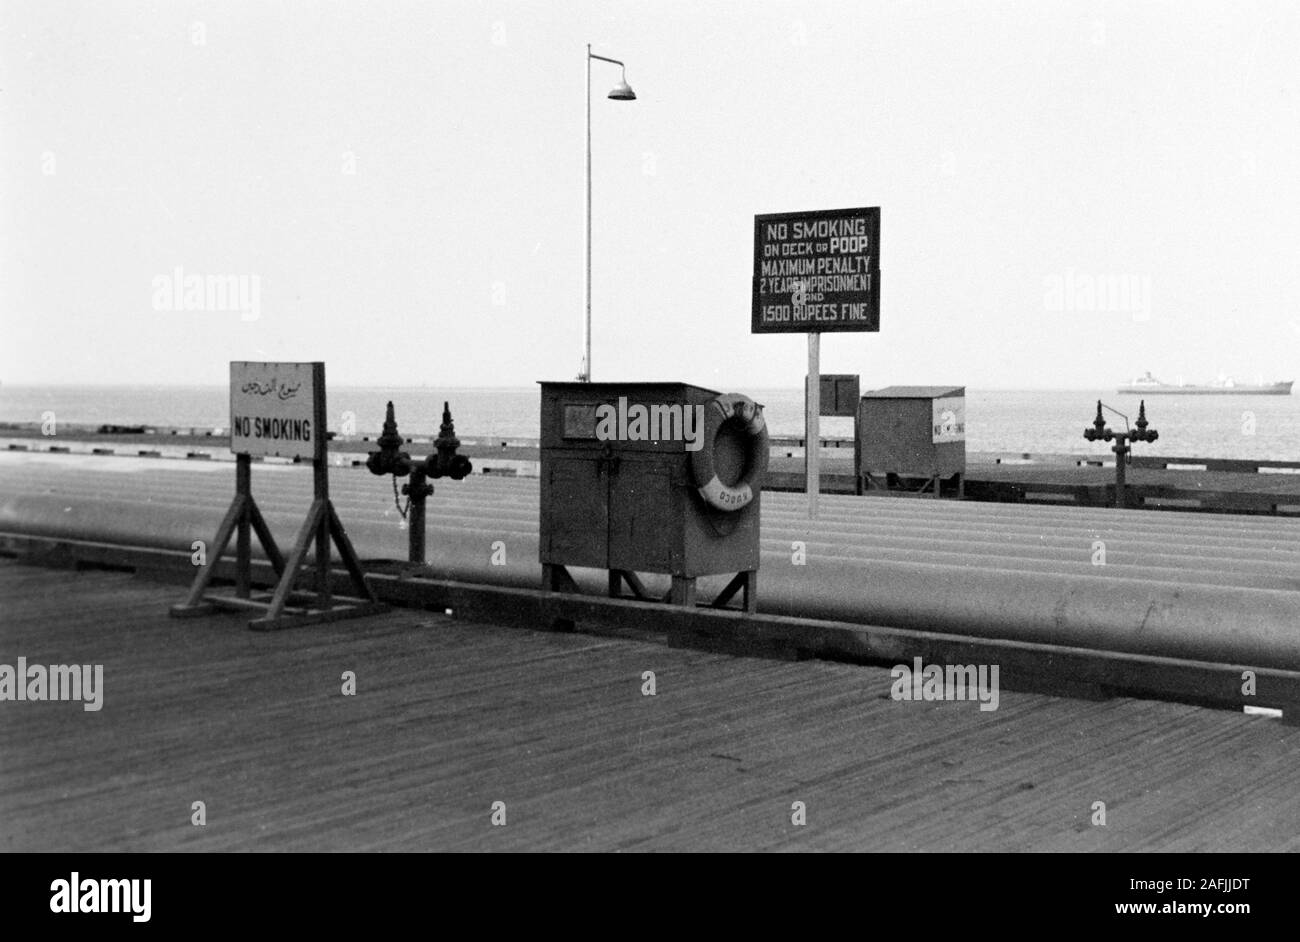 Hafenanlage mit Warnschild im Hafen von Port Said, Ägypten, 1955. Quay with warning sign at Port Said harbor, Egypt, 1955. Stock Photo